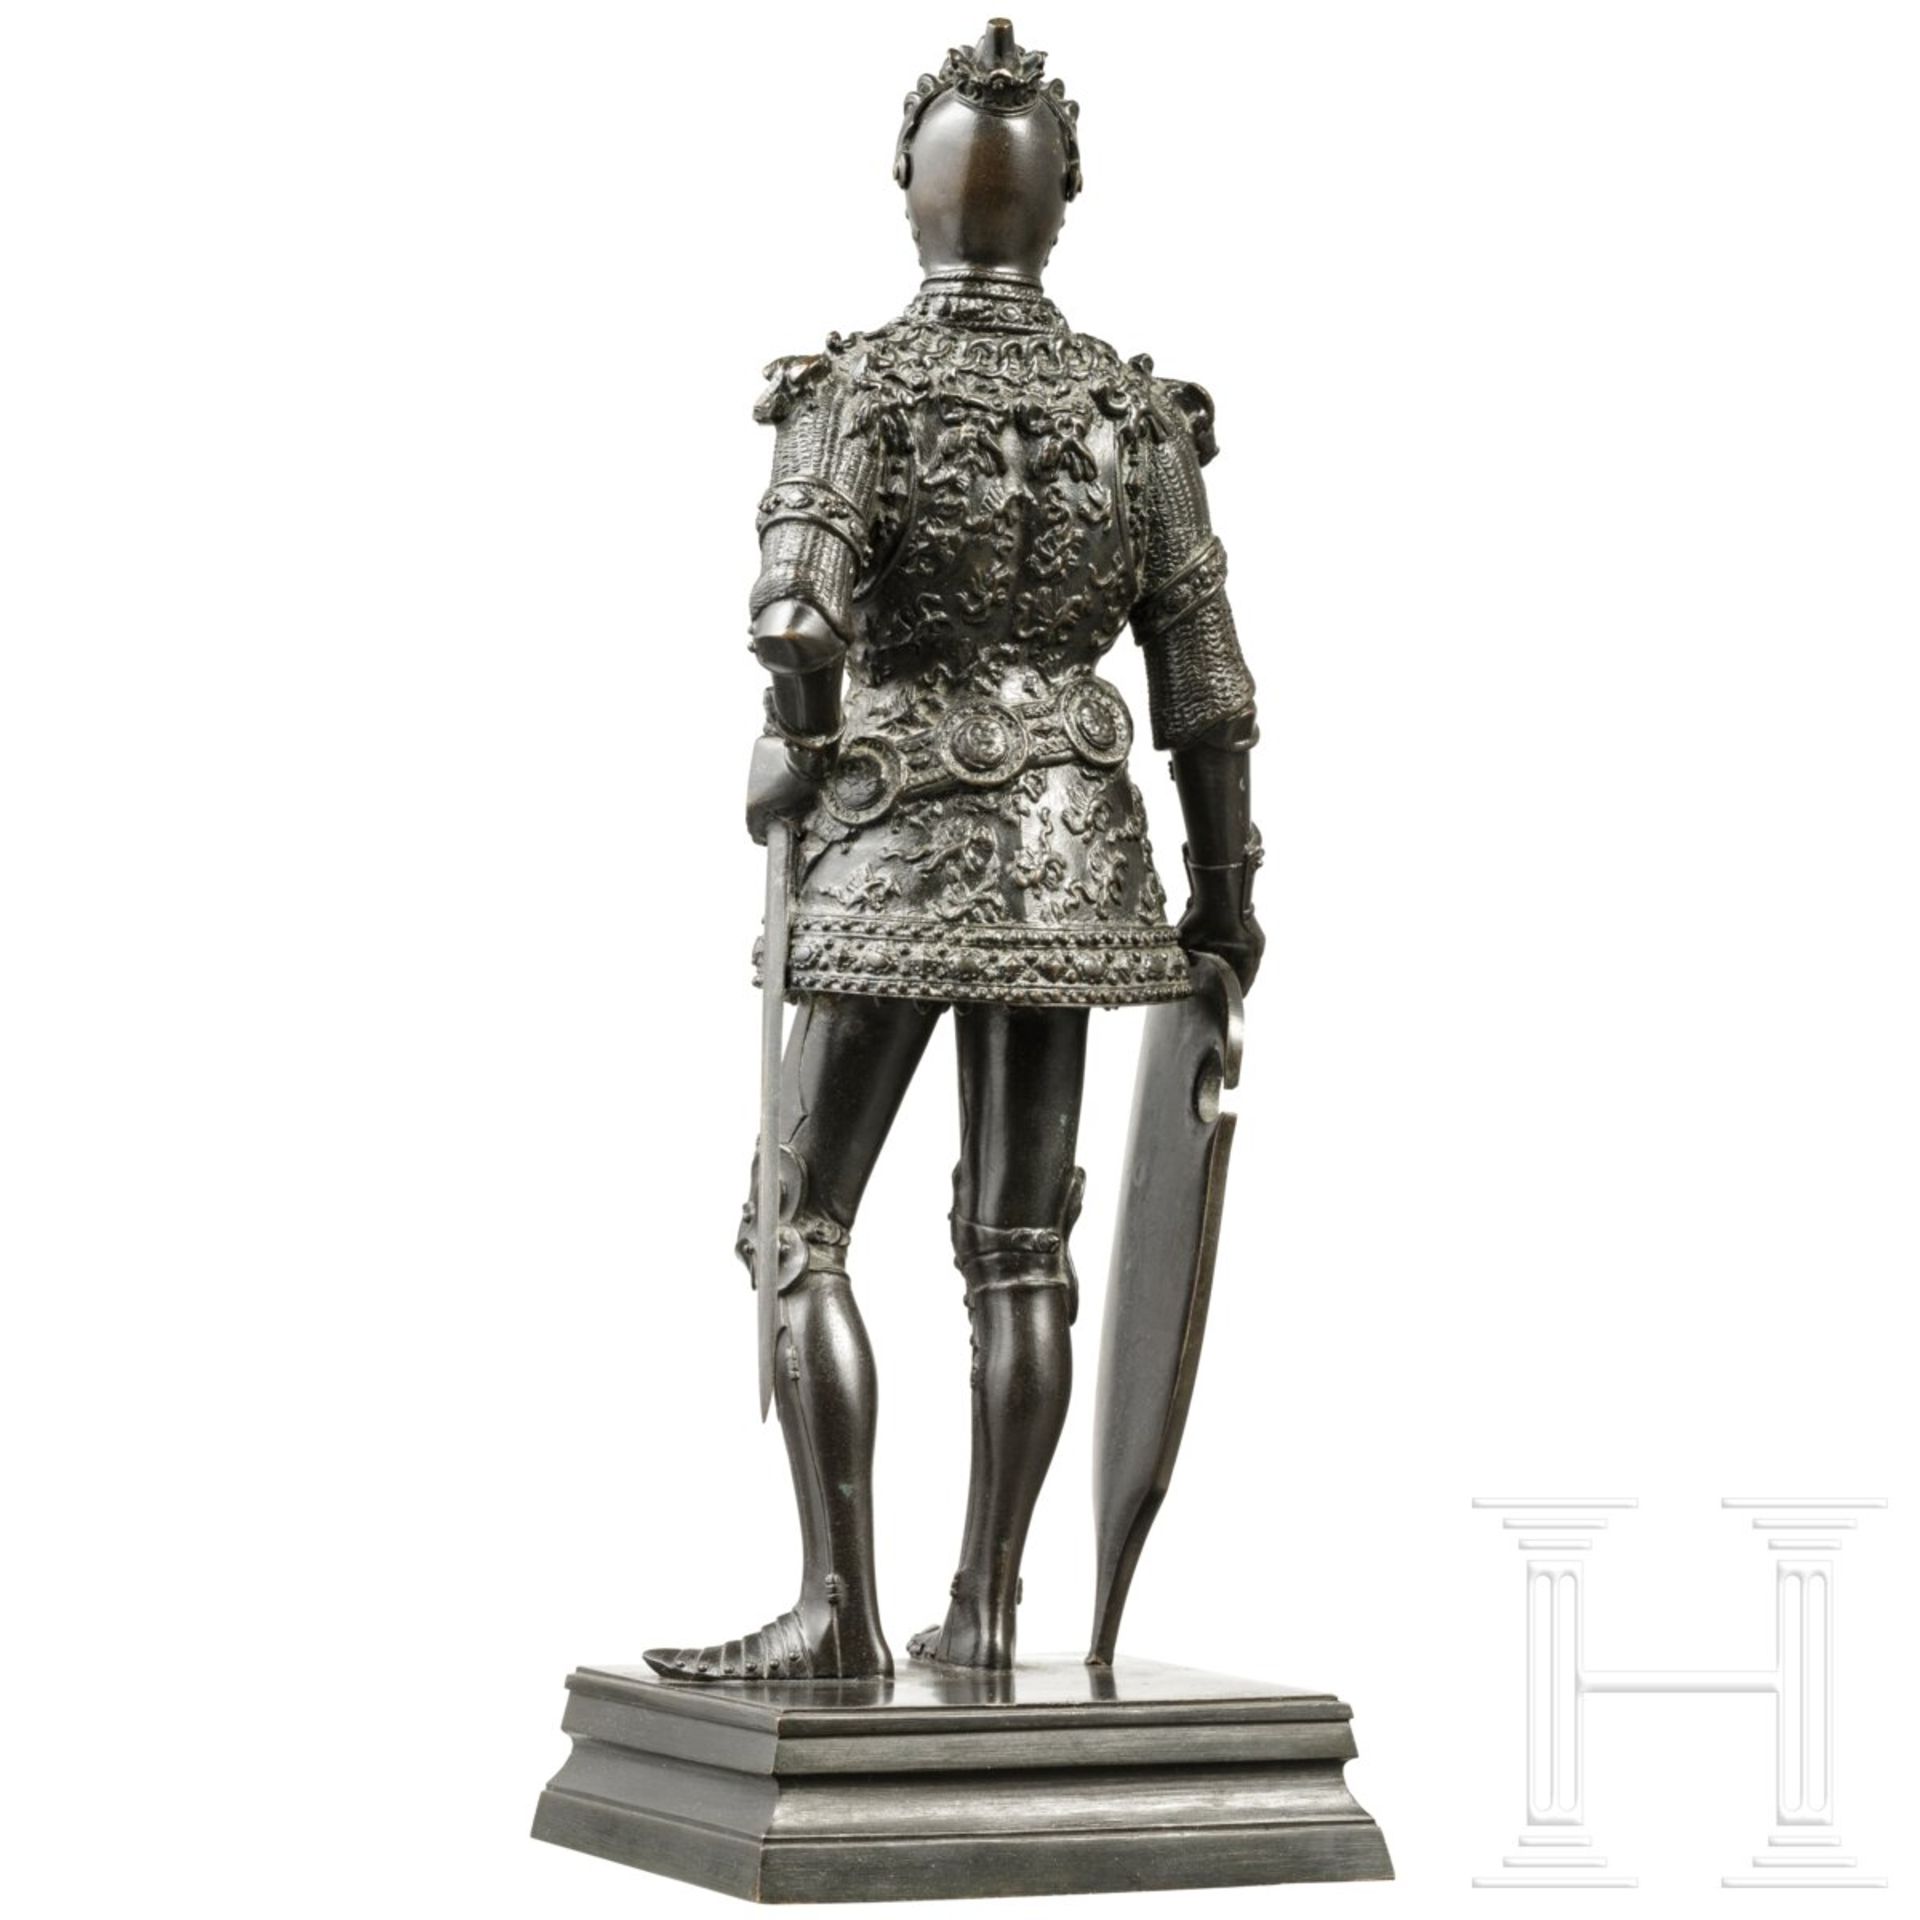 Arthur, König von England - Bronzefigur nach der Innsbrucker Hofkirche, 20. Jhdt. - Bild 3 aus 5